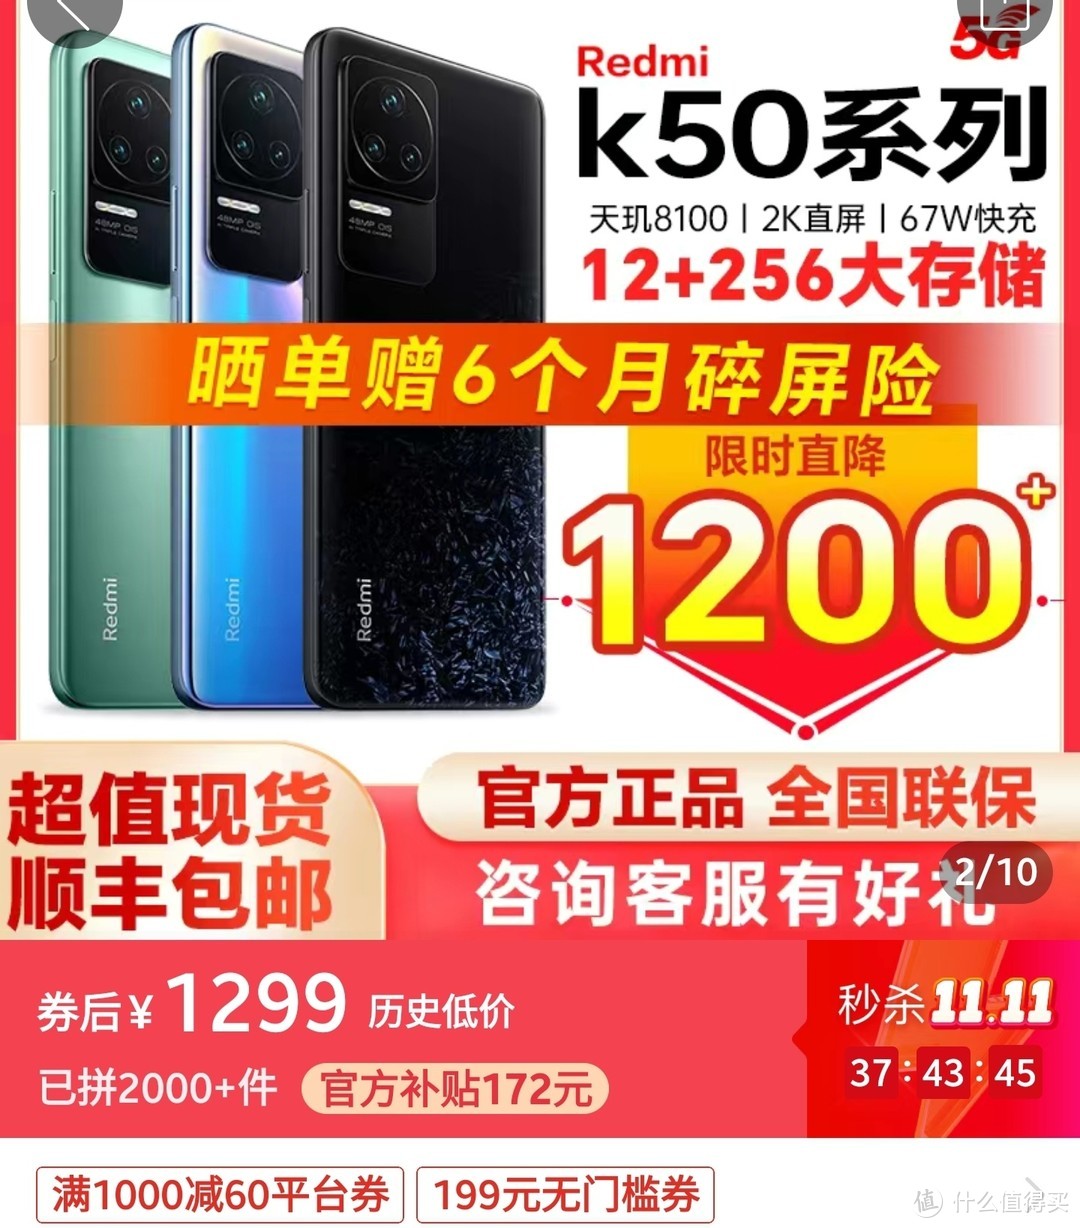 神价手机来了，Redmi K50 内卷价1299元，真我GT Neo5 仅售1739元，真我GT Neo5 SE 只要1459元。